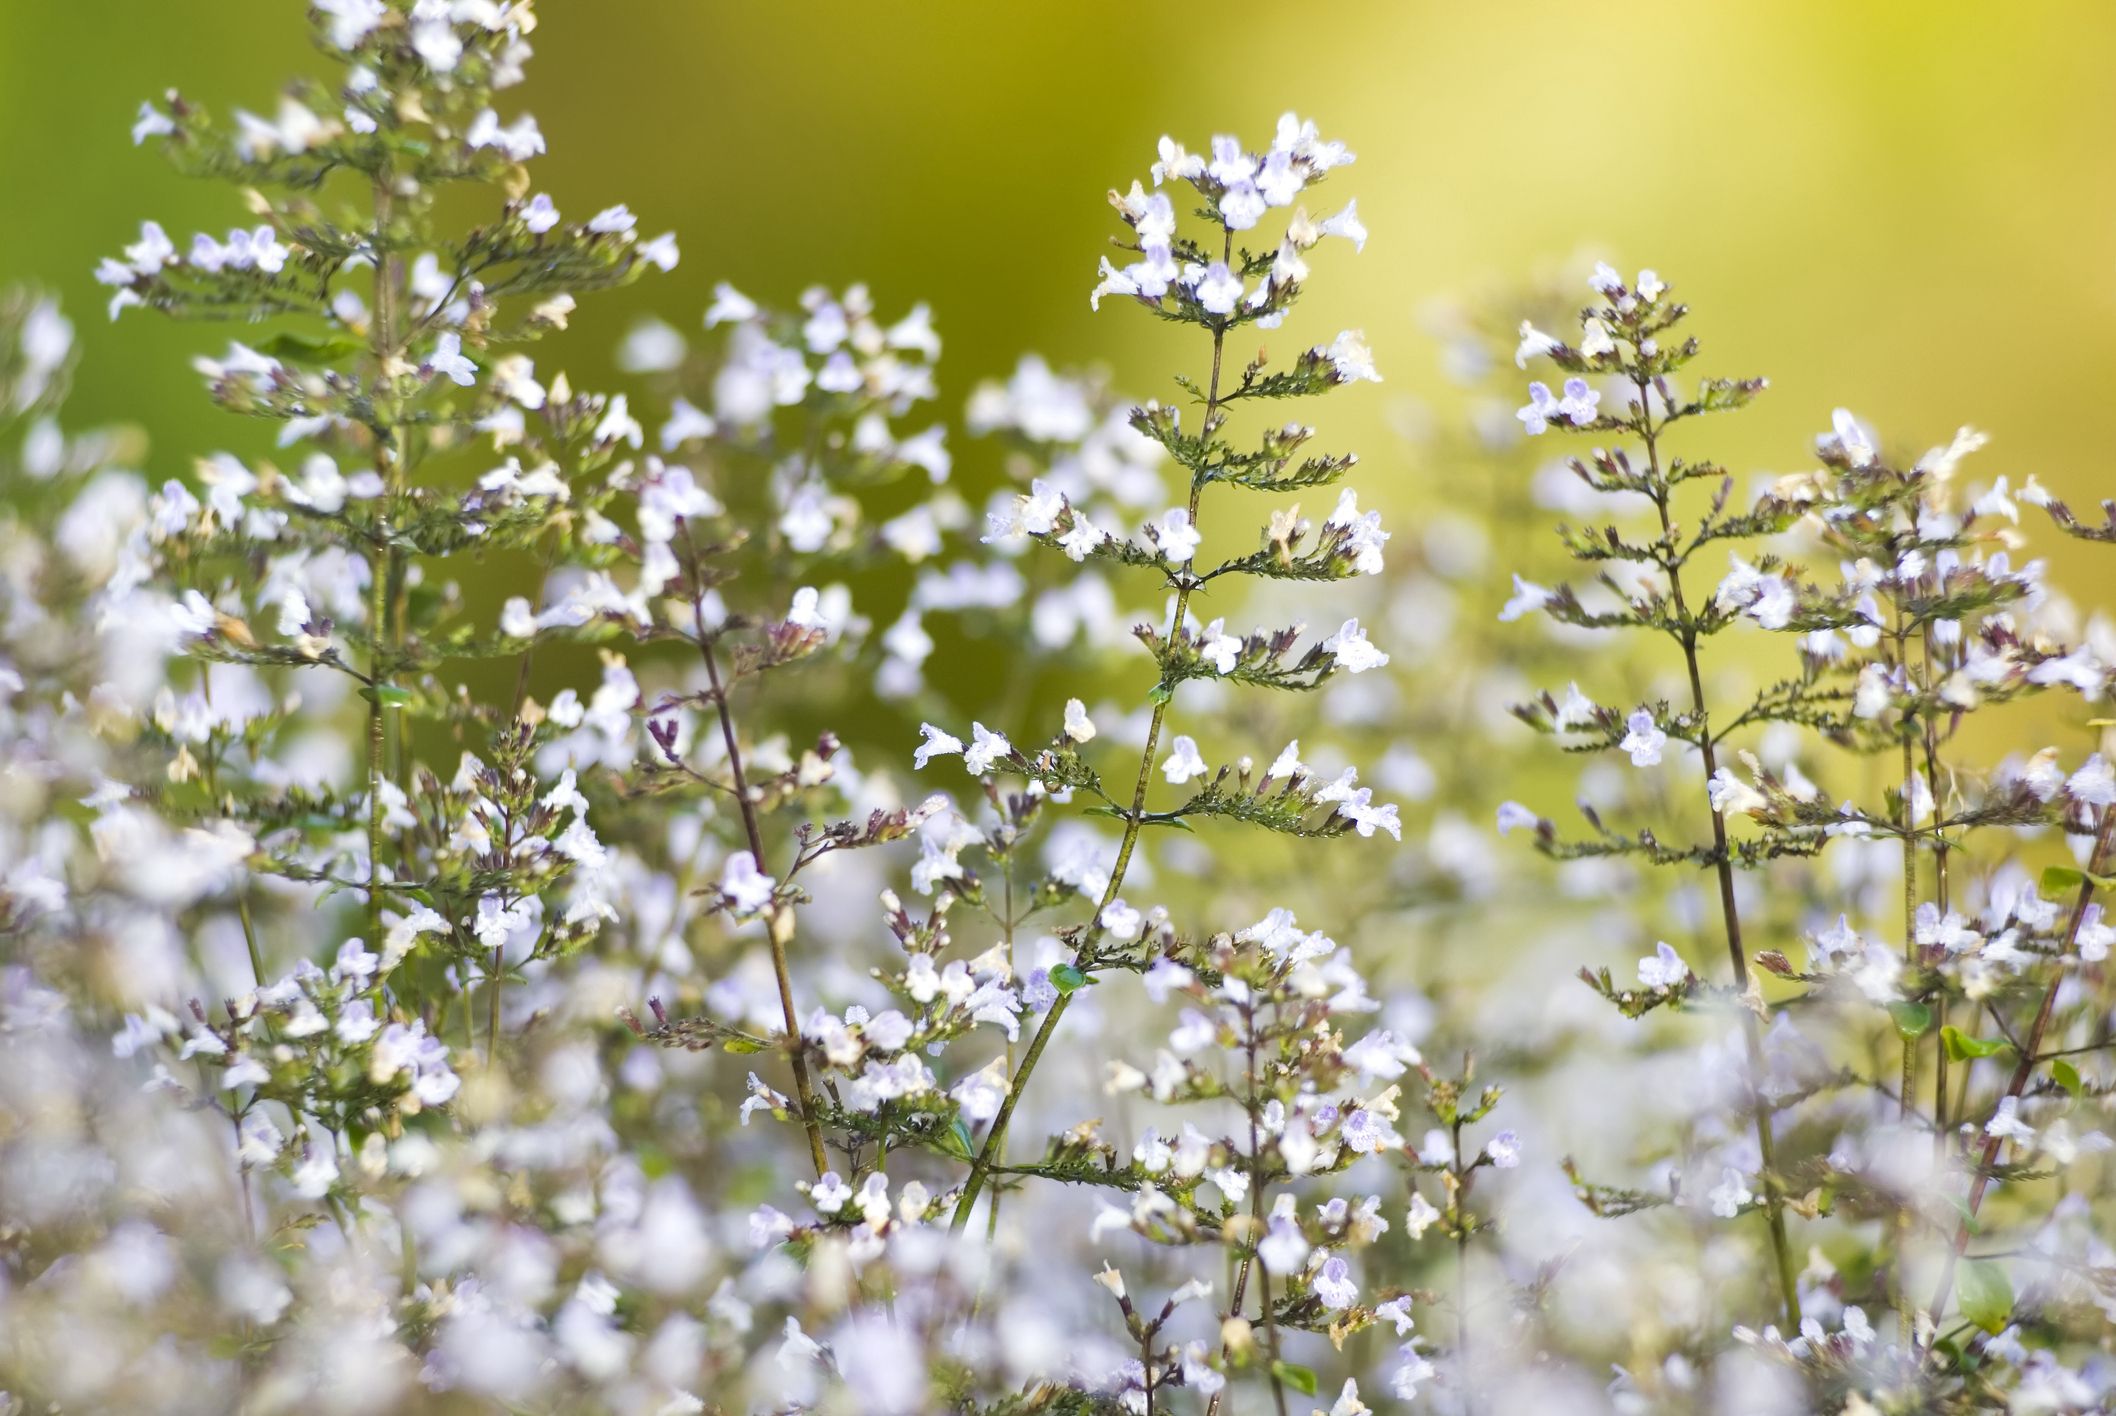 25+ White Flower Plants for the Garden - Outdoor White Flowering